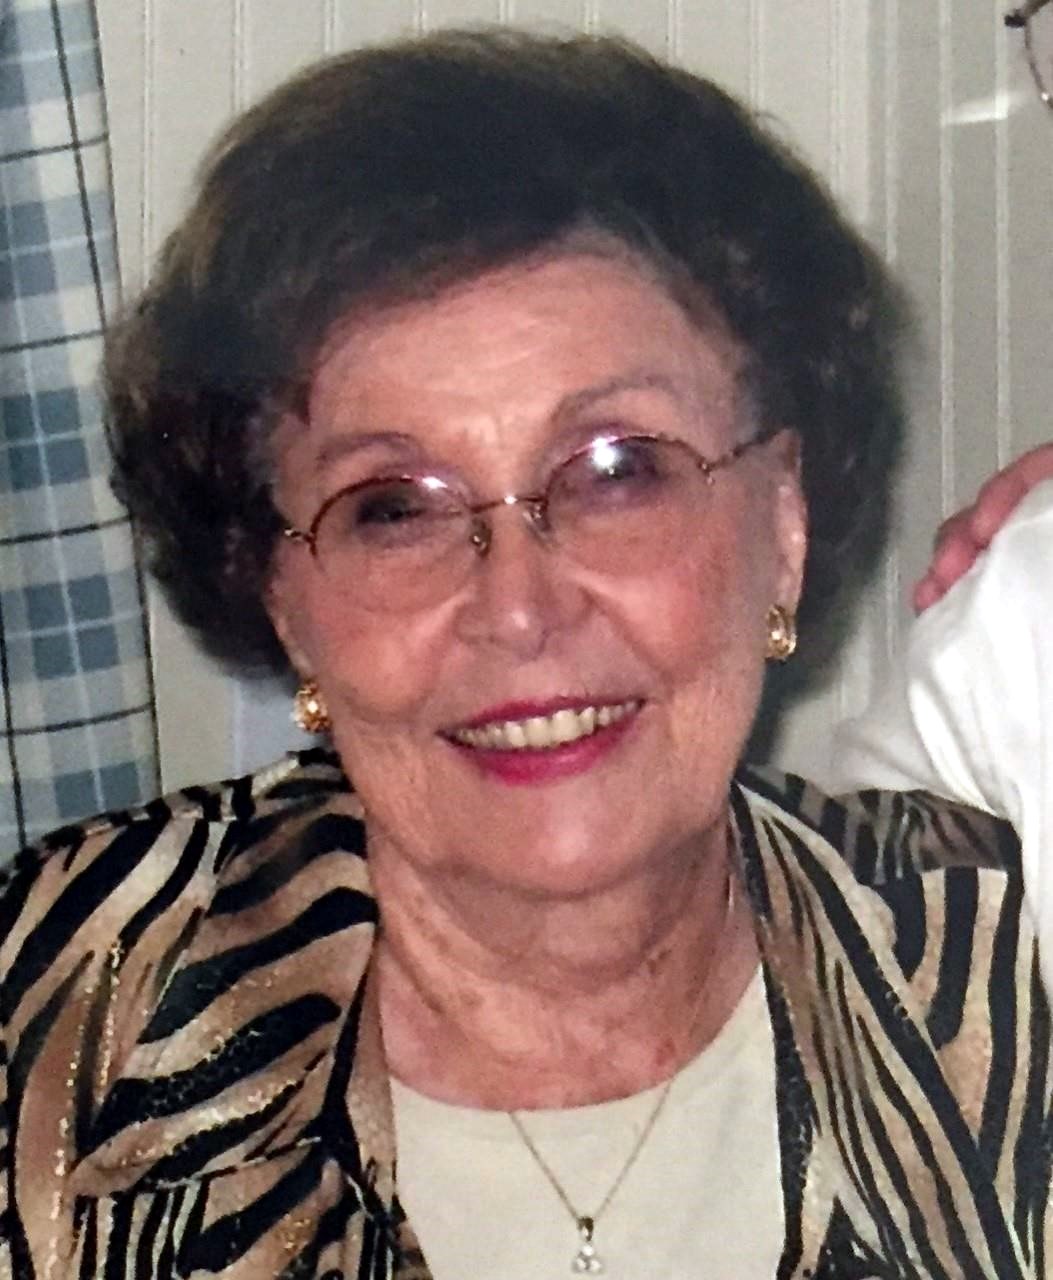 Obituary of Aurelia Faye Wilson - 01/19/2019 - From the Family